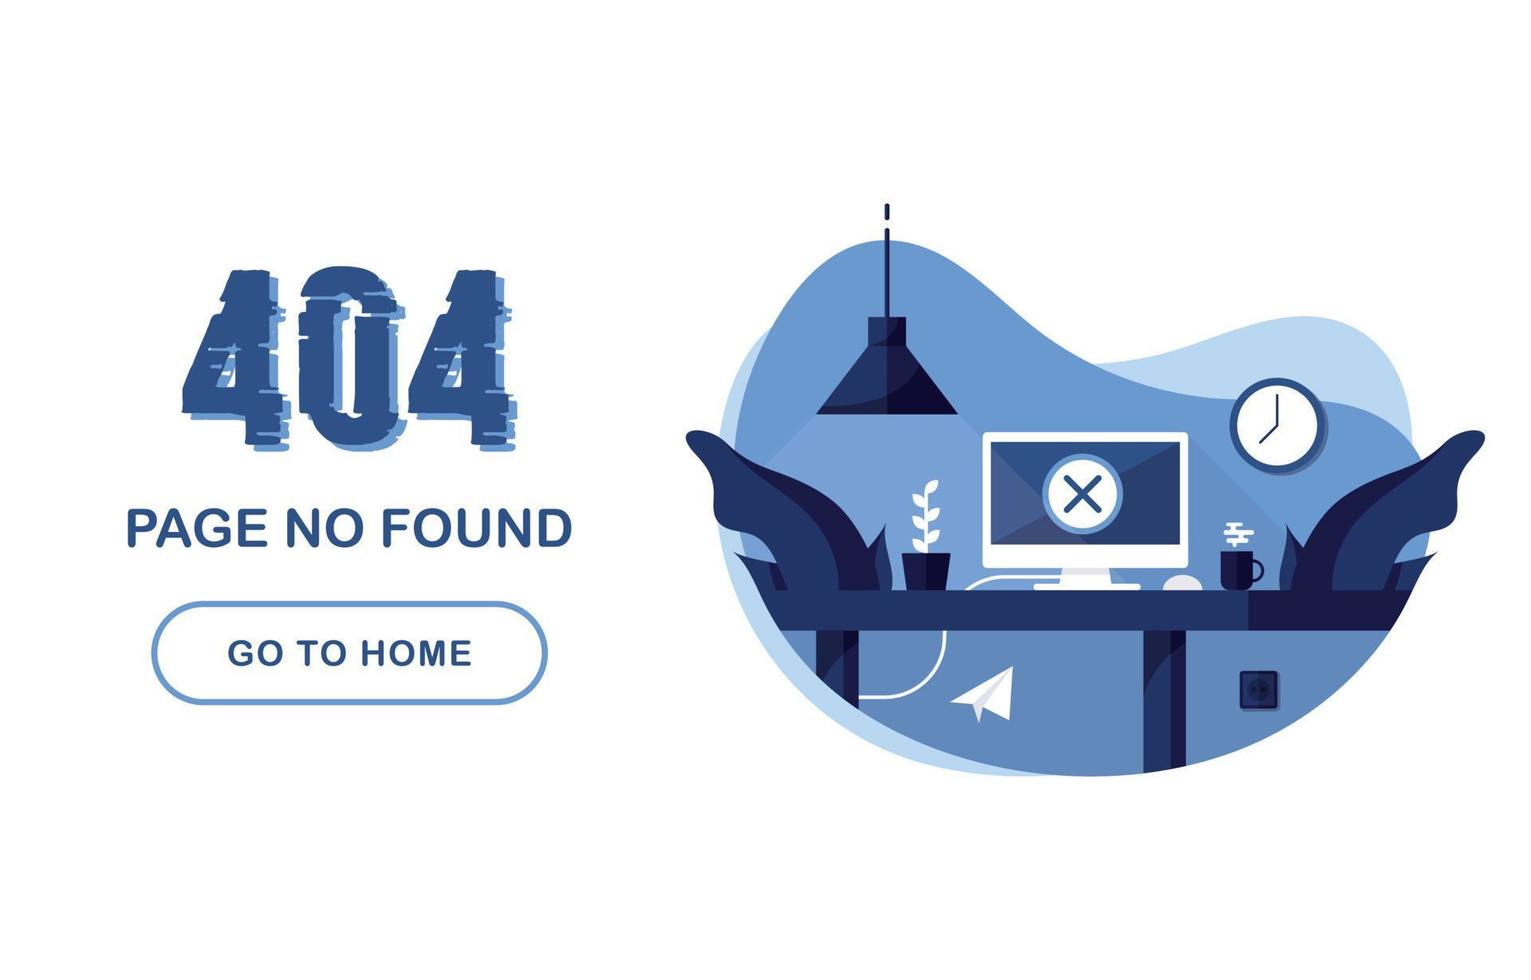 página de erro 404 não encontrada. vá para a bandeira inicial. erro do sistema, página quebrada. interior com computador e mesa. para site. relatório do problema. azul e branco. eps 10 vetor